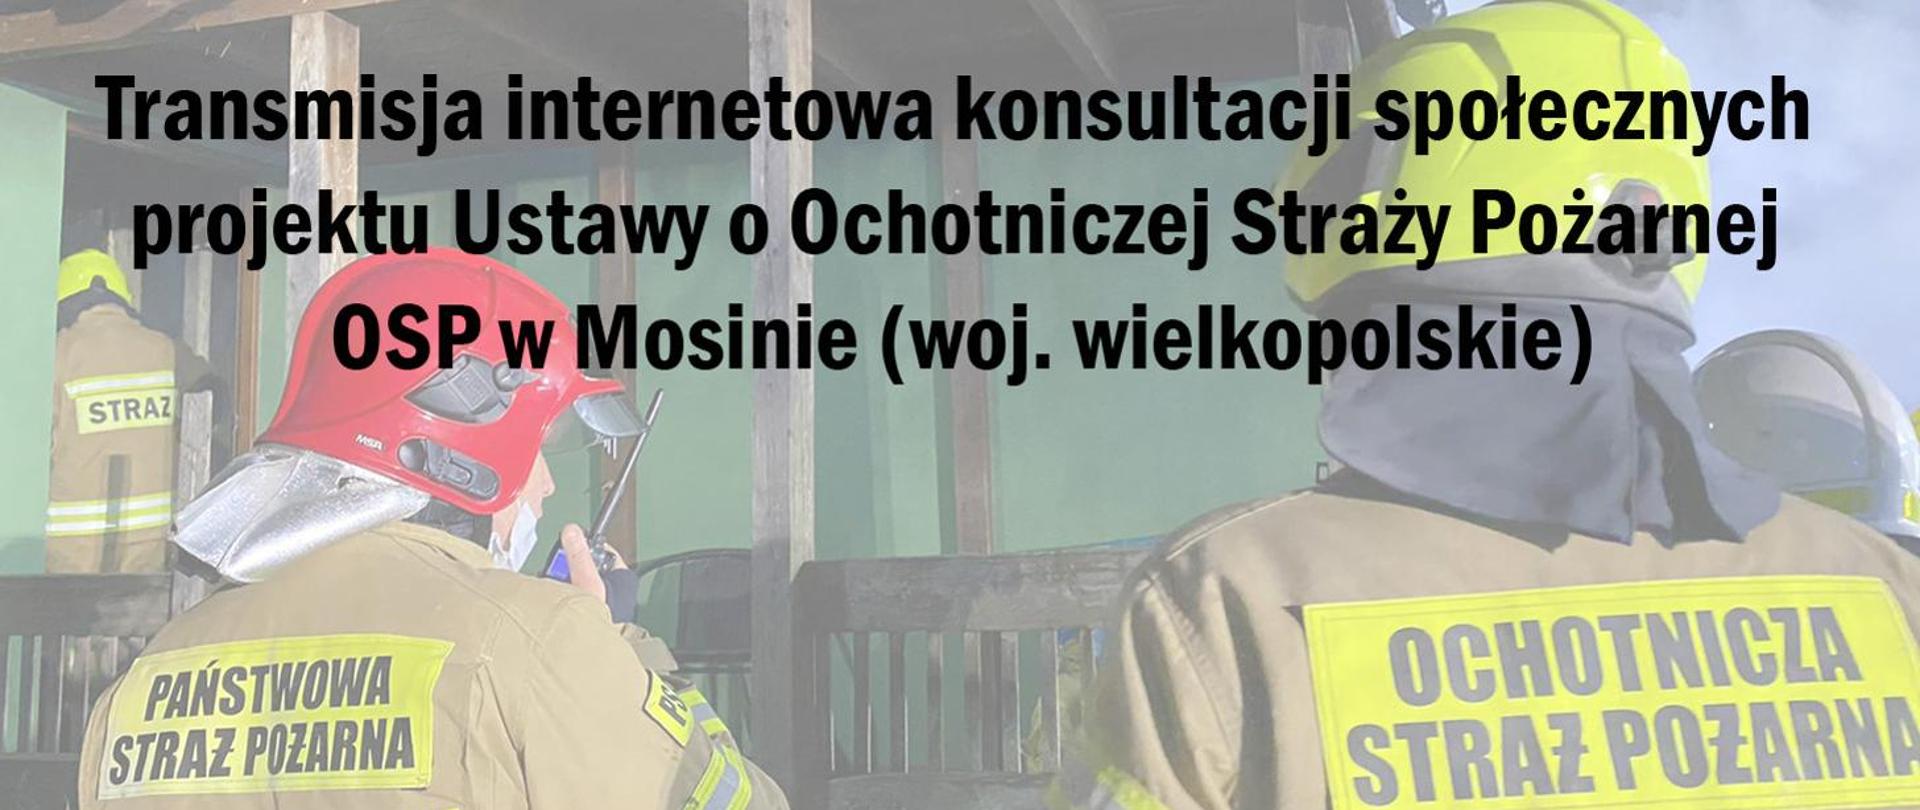 Na zdjęciu strażak OSP i PSP. Napis: Transmisja online – konsultacje społeczne projektu Ustawy o Ochotniczej Straży Pożarnej, z udziałem Komendanta Głównego PSP